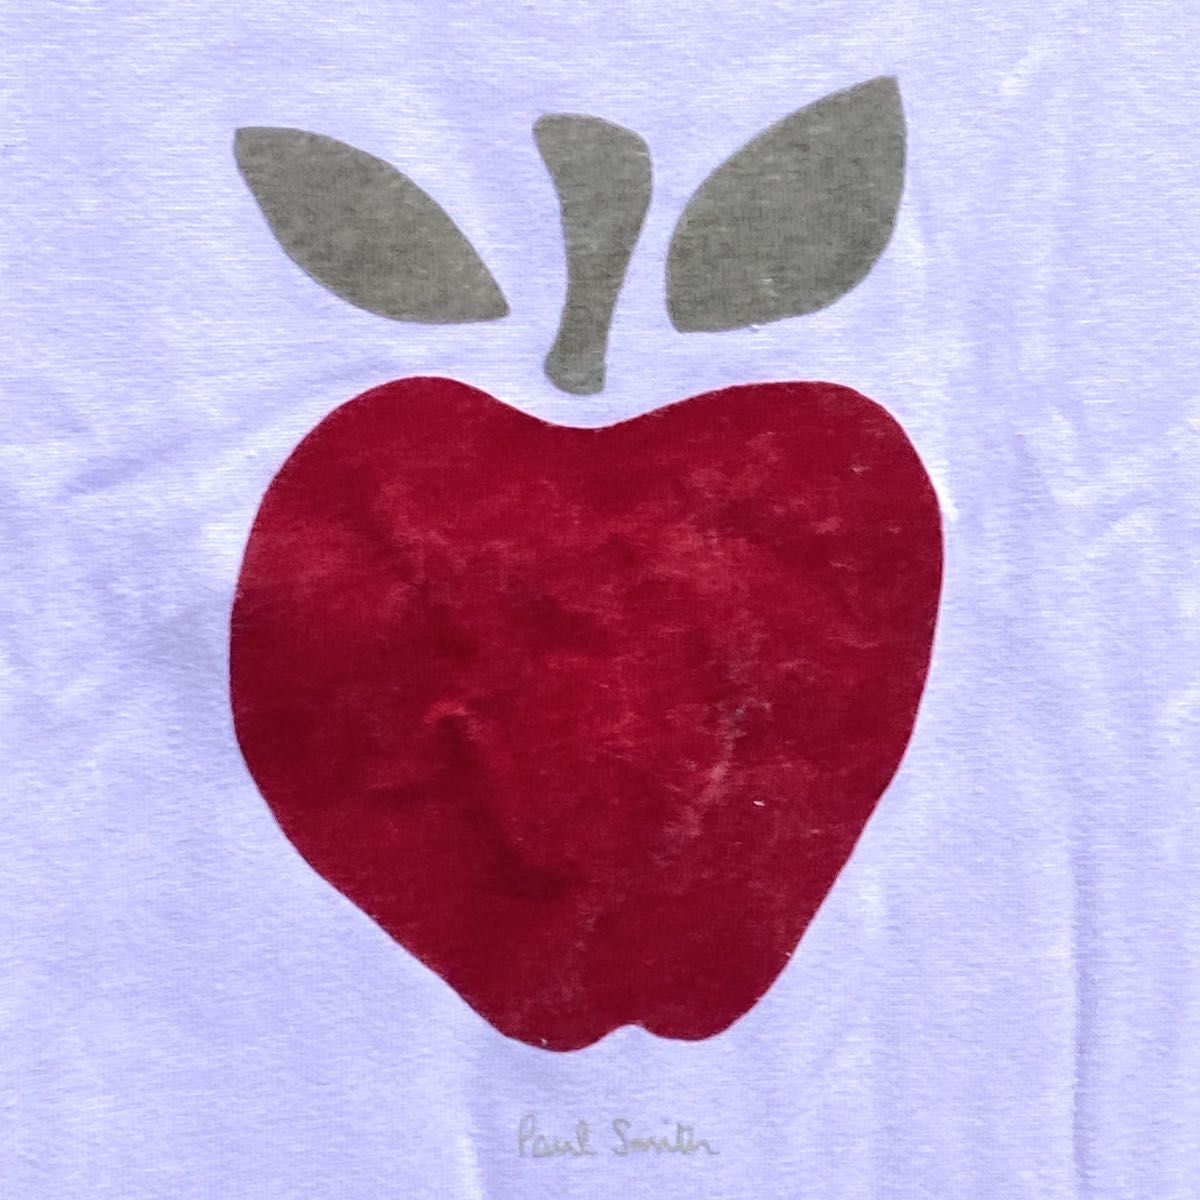 【美品】PaulSmith ポールスミス Tシャツ 半袖 アップル マルチカラー レディース